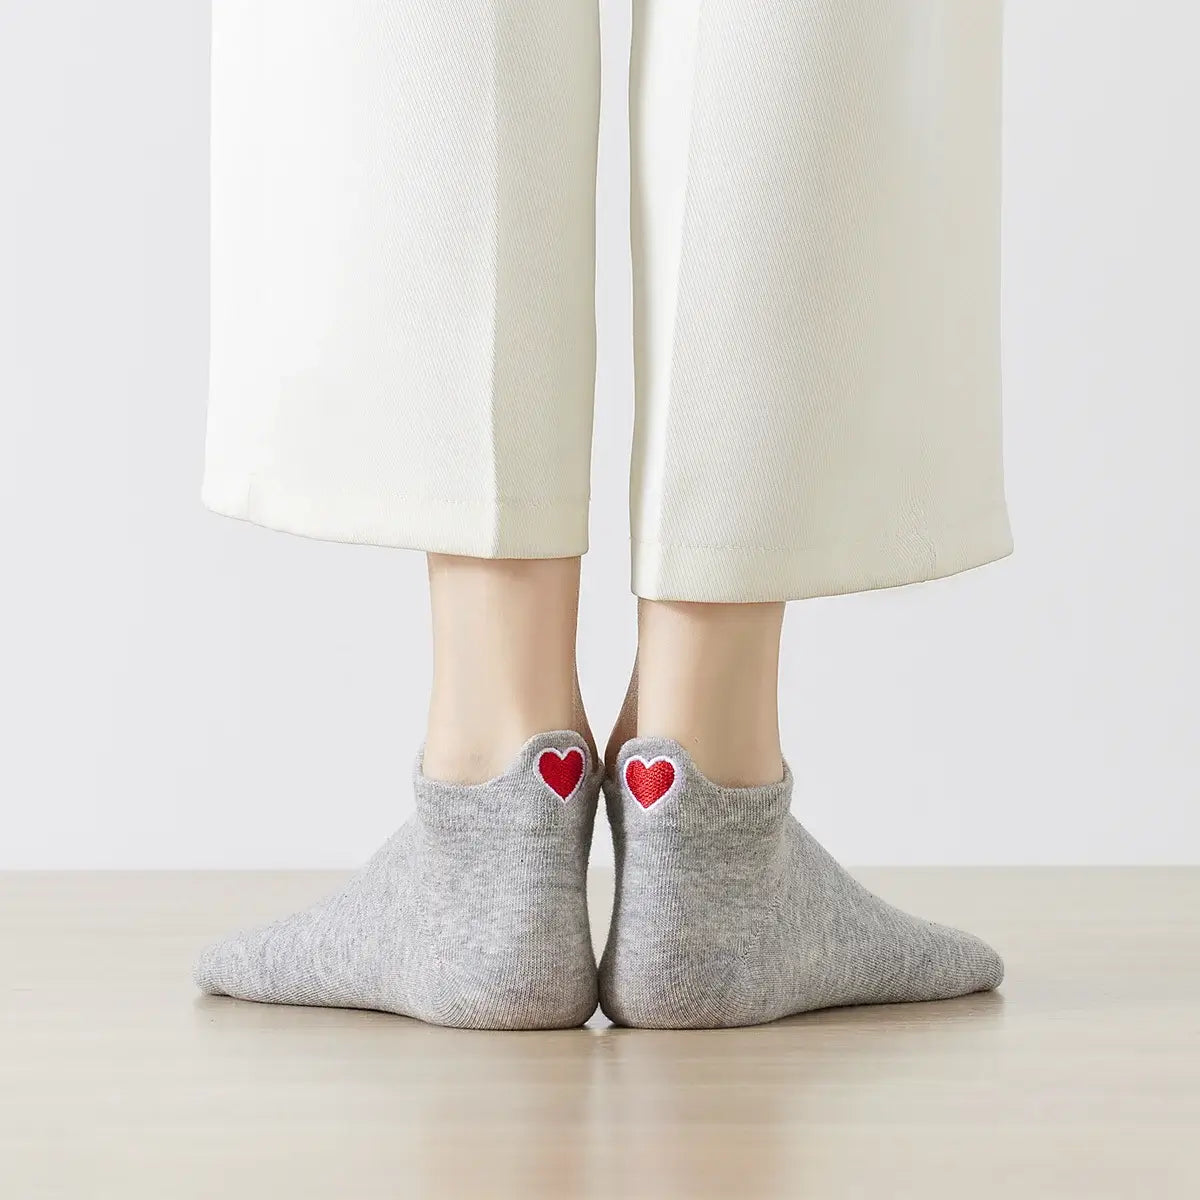 Chaussettes grises en coton à languette cœur rouge pour femme | Chaussettes douces et respirantes | Fabriquées à partir de matériaux de haute qualité | Un cadeau parfait pour les femmes de tous âges